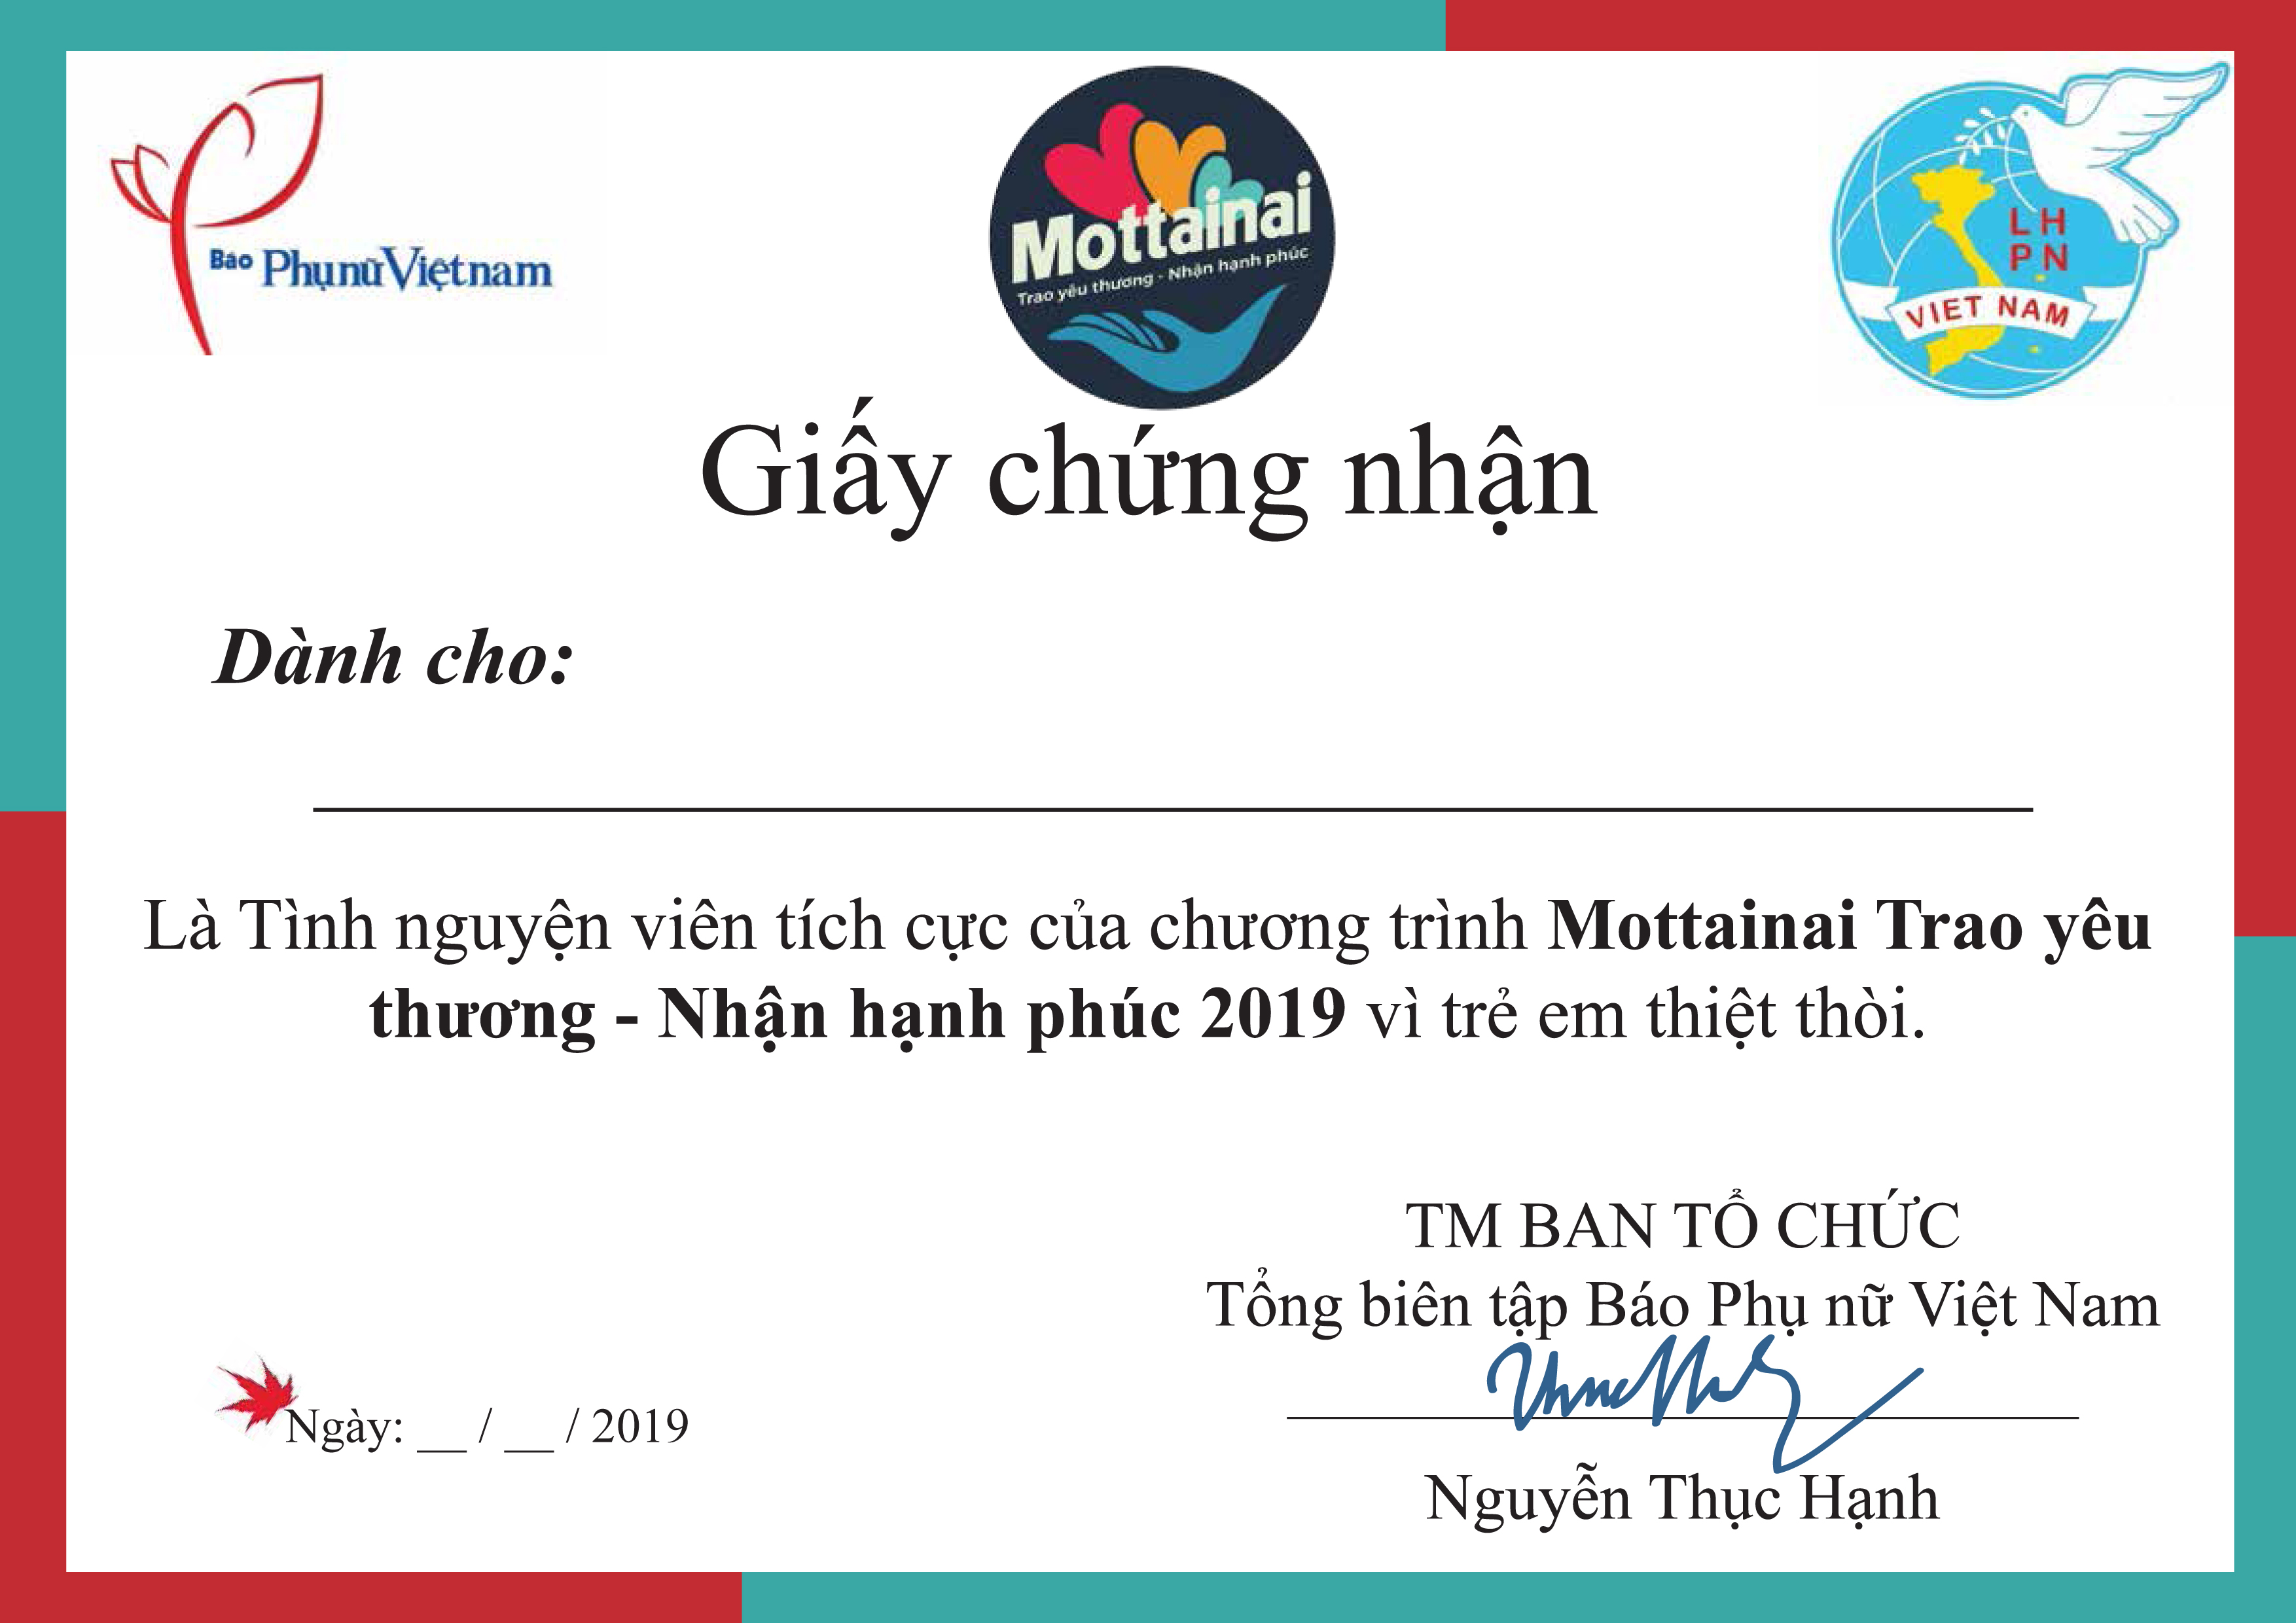 Báo Phụ nữ Việt Nam tuyển tình nguyện viên Mottainai 2022 - Ảnh 2.